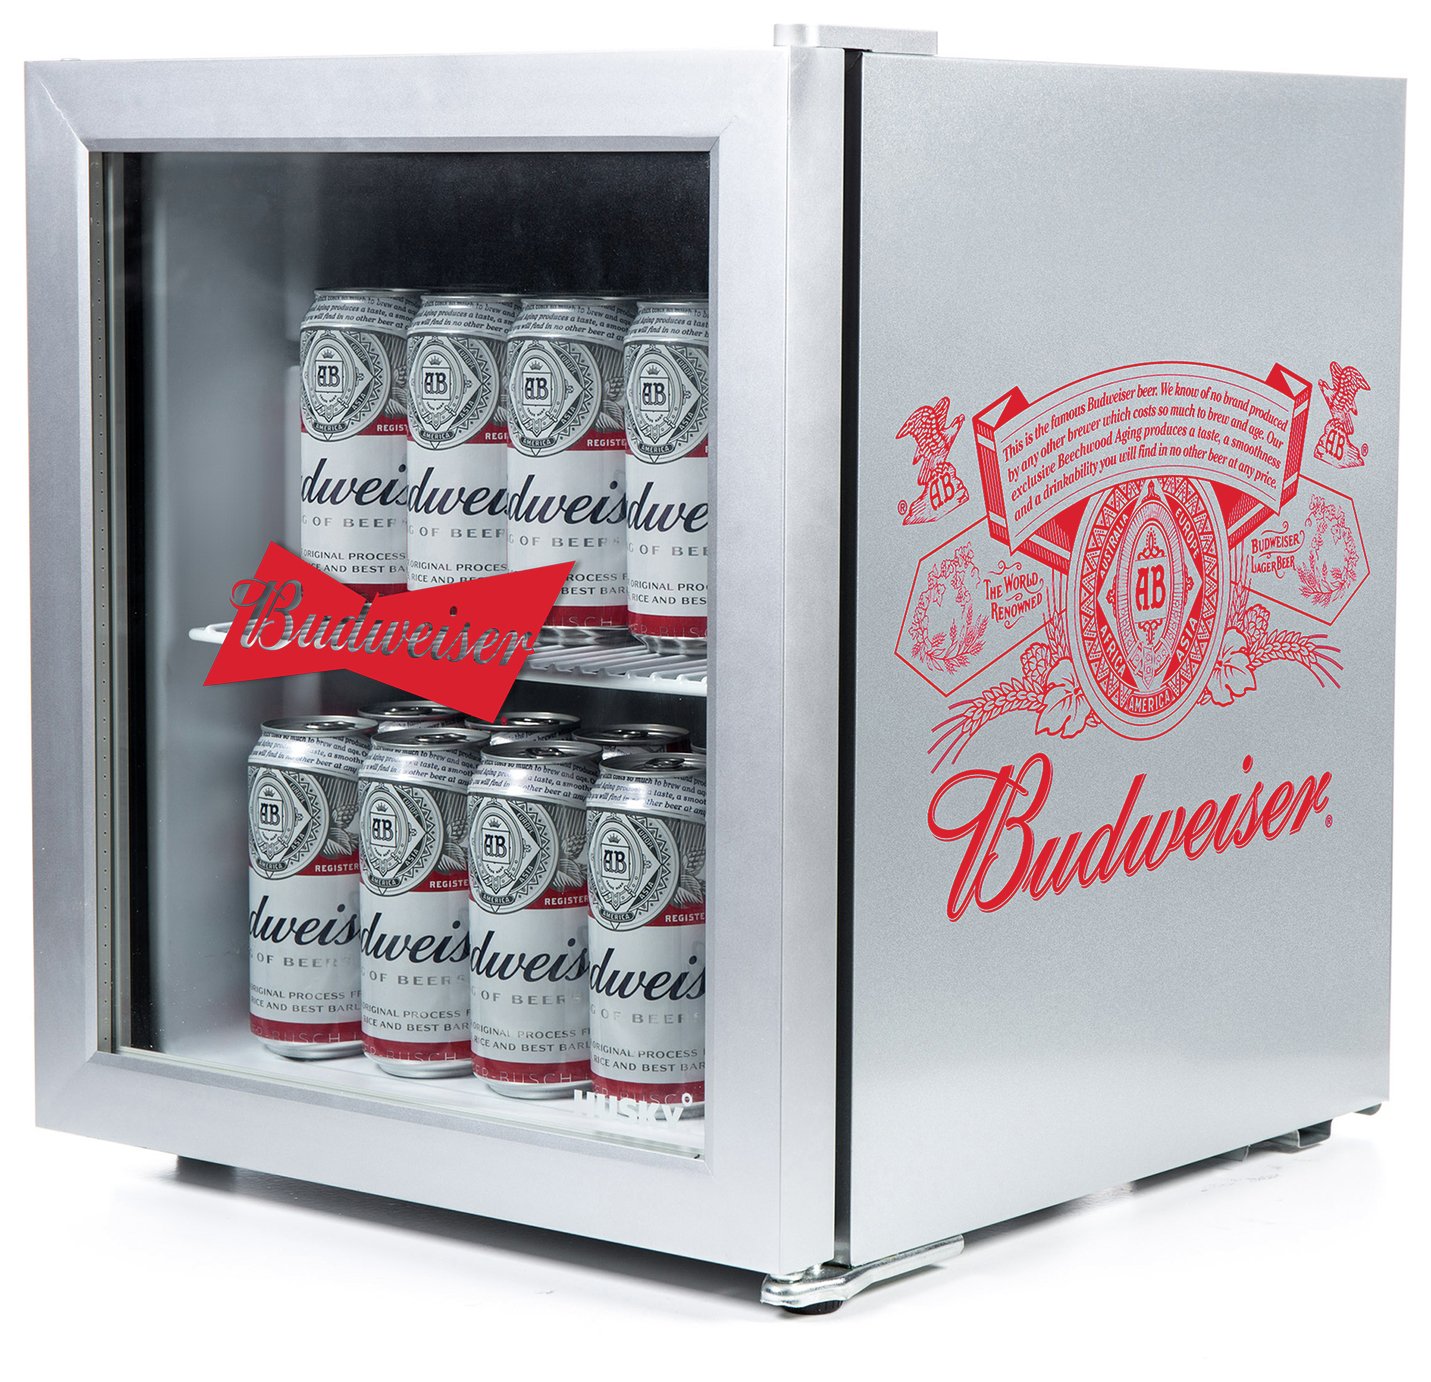 Husky Budweiser 46 Litre Drinks Cooler Review